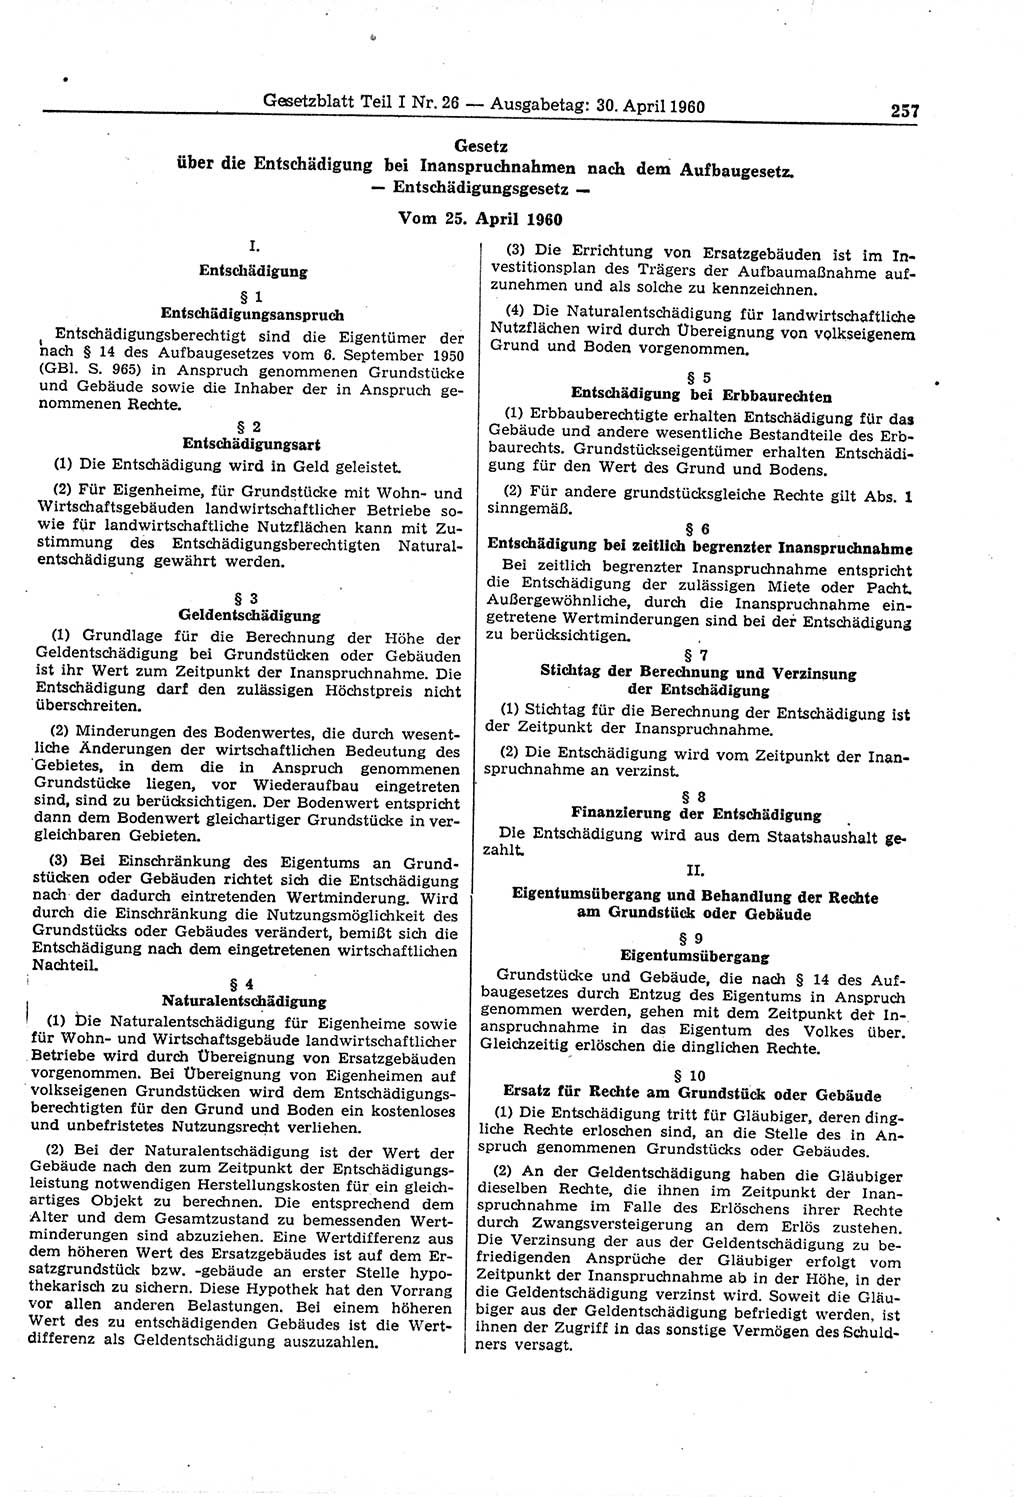 Gesetzblatt (GBl.) der Deutschen Demokratischen Republik (DDR) Teil Ⅰ 1960, Seite 257 (GBl. DDR Ⅰ 1960, S. 257)